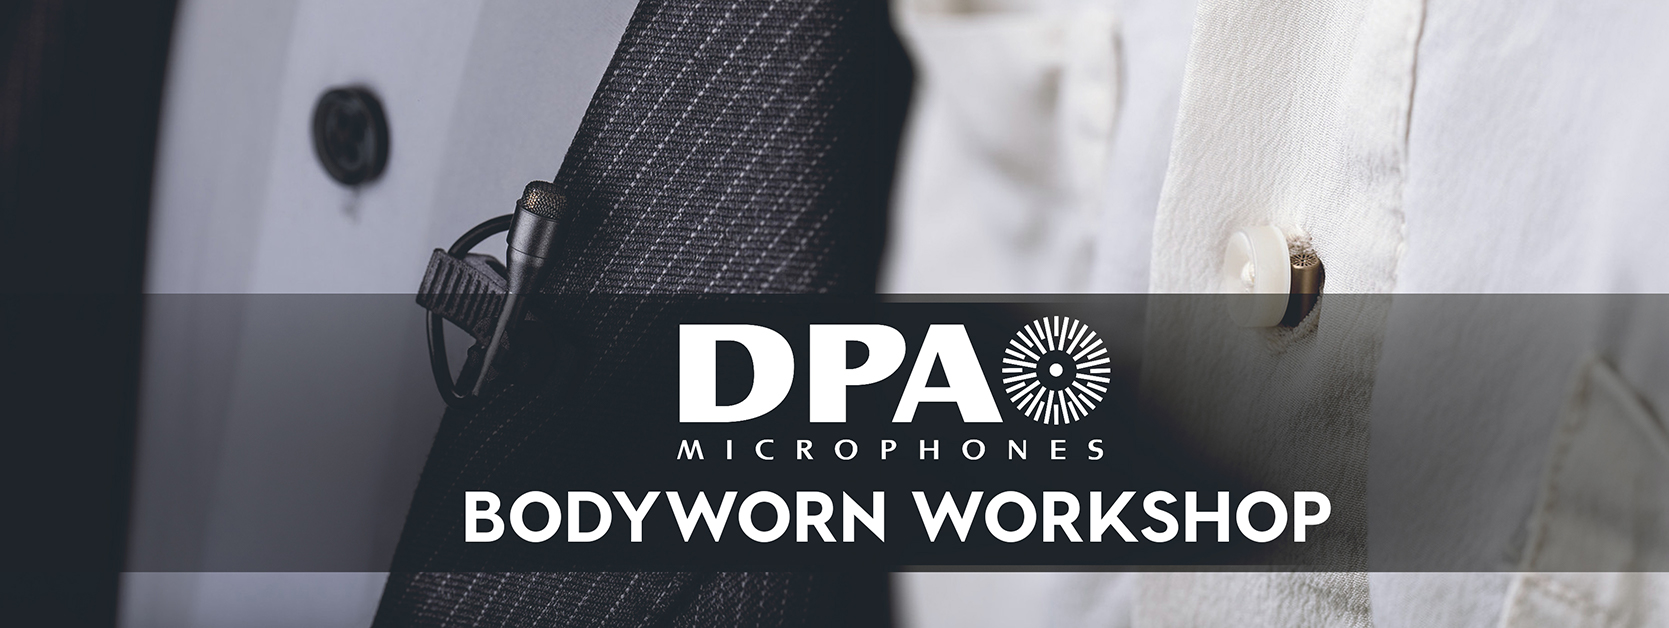 DPA Bodyworn Workshop 2019